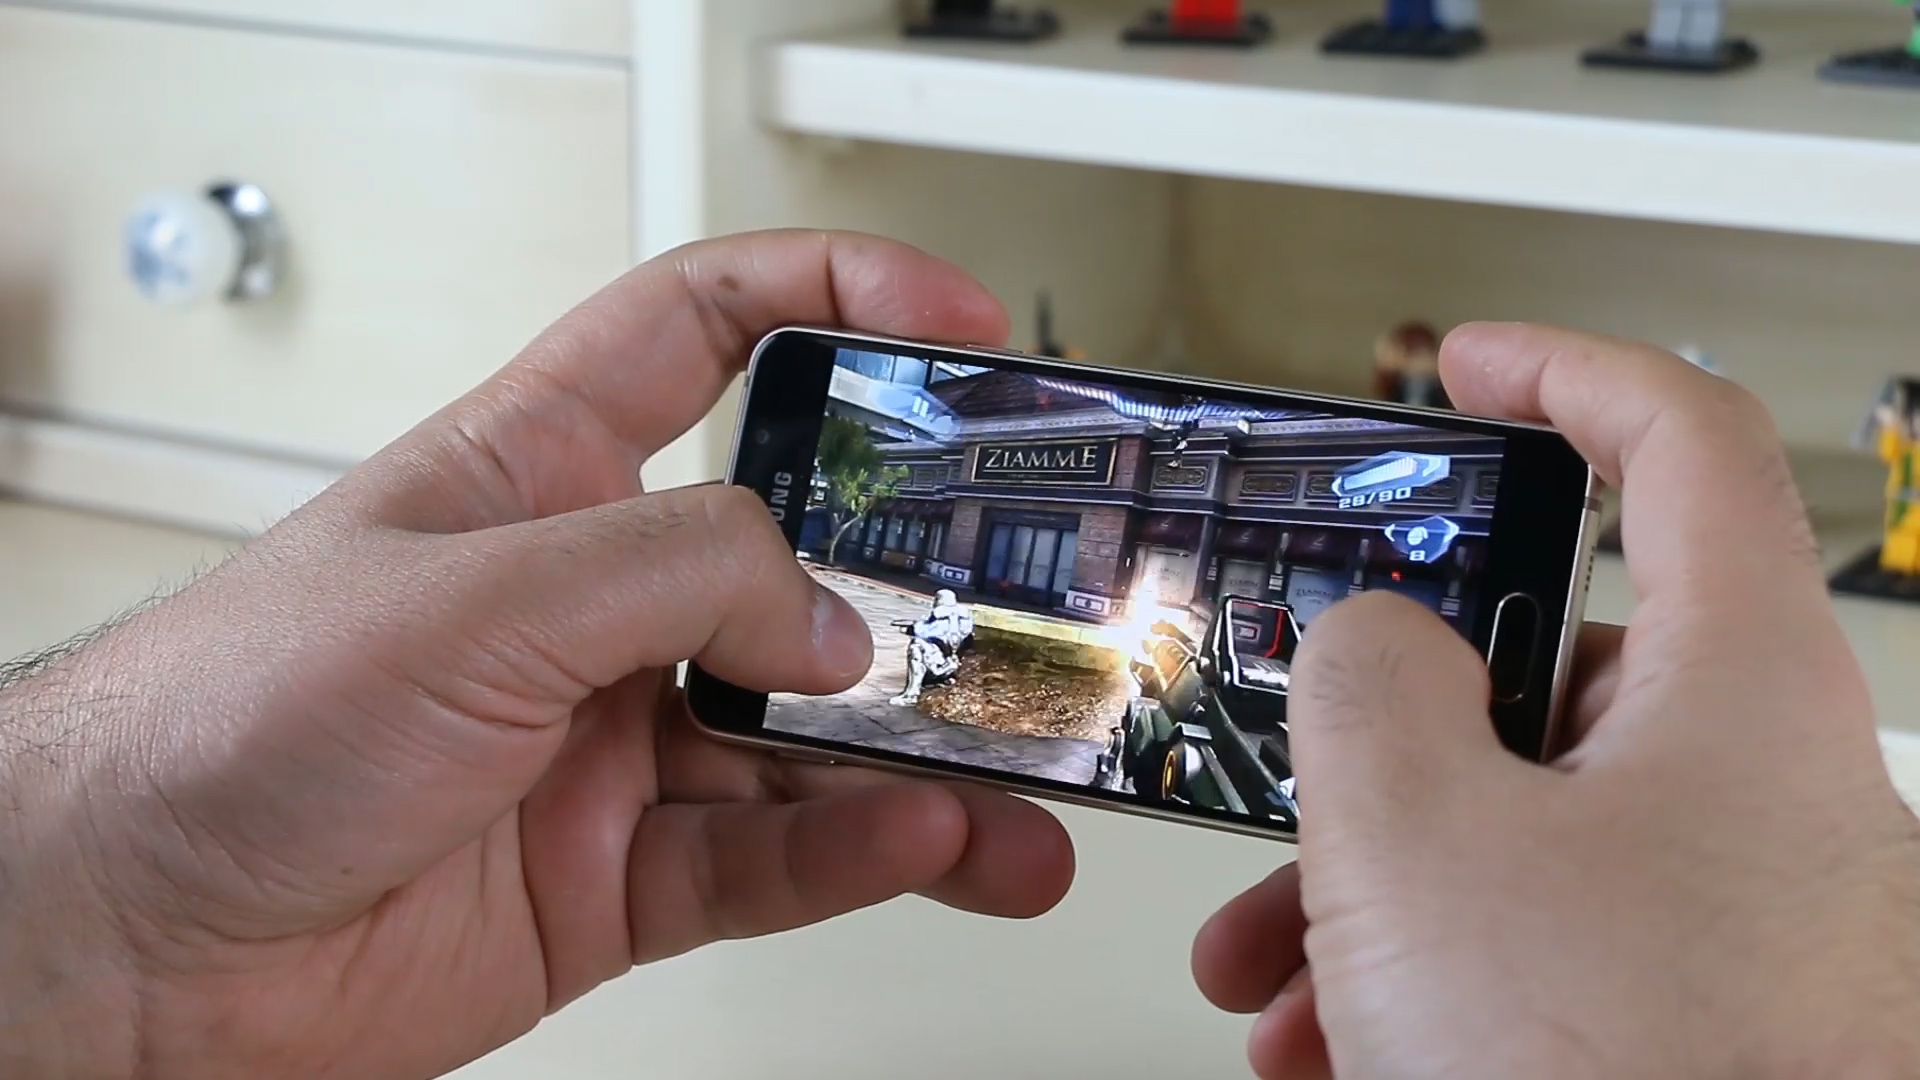 Samsung Galaxy A3 2016 inceleme videosu 'Tasarımıyla öne çıkan telefon'